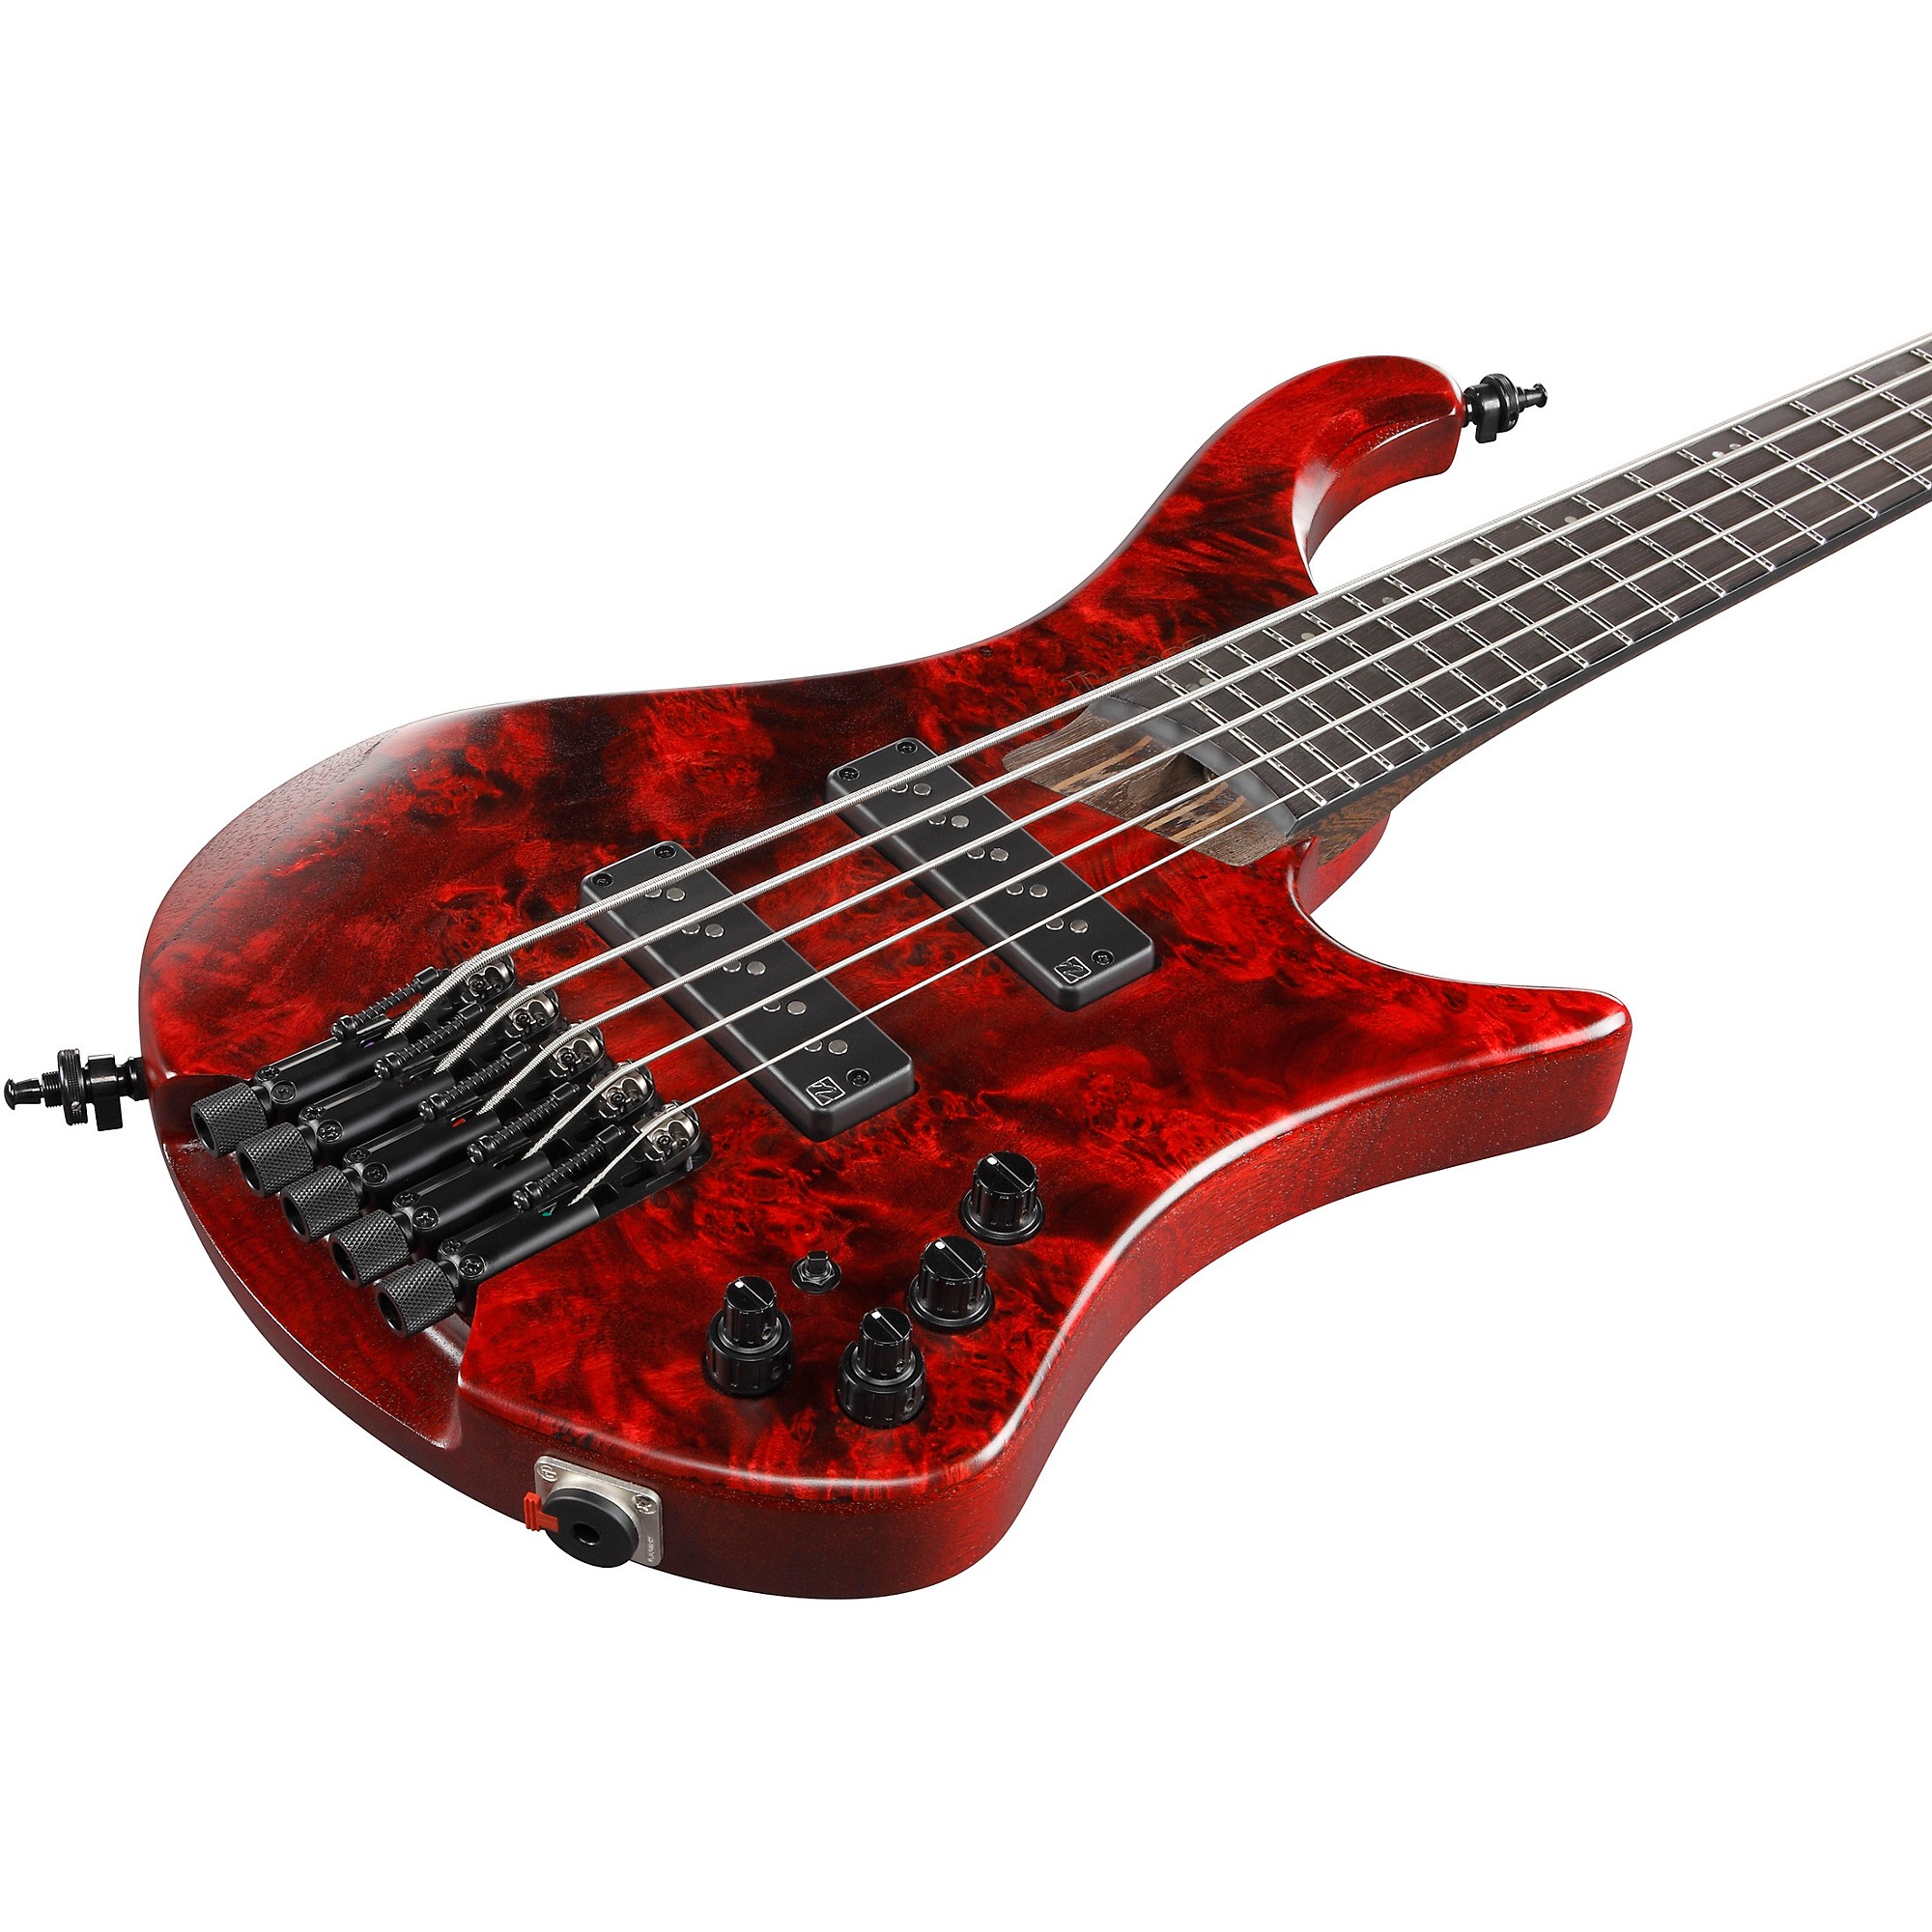 Ibanez EHB1505 5-струнная эргономичная бас-гитара без головы, окрашенная в винно-красный цвет с легким блеском